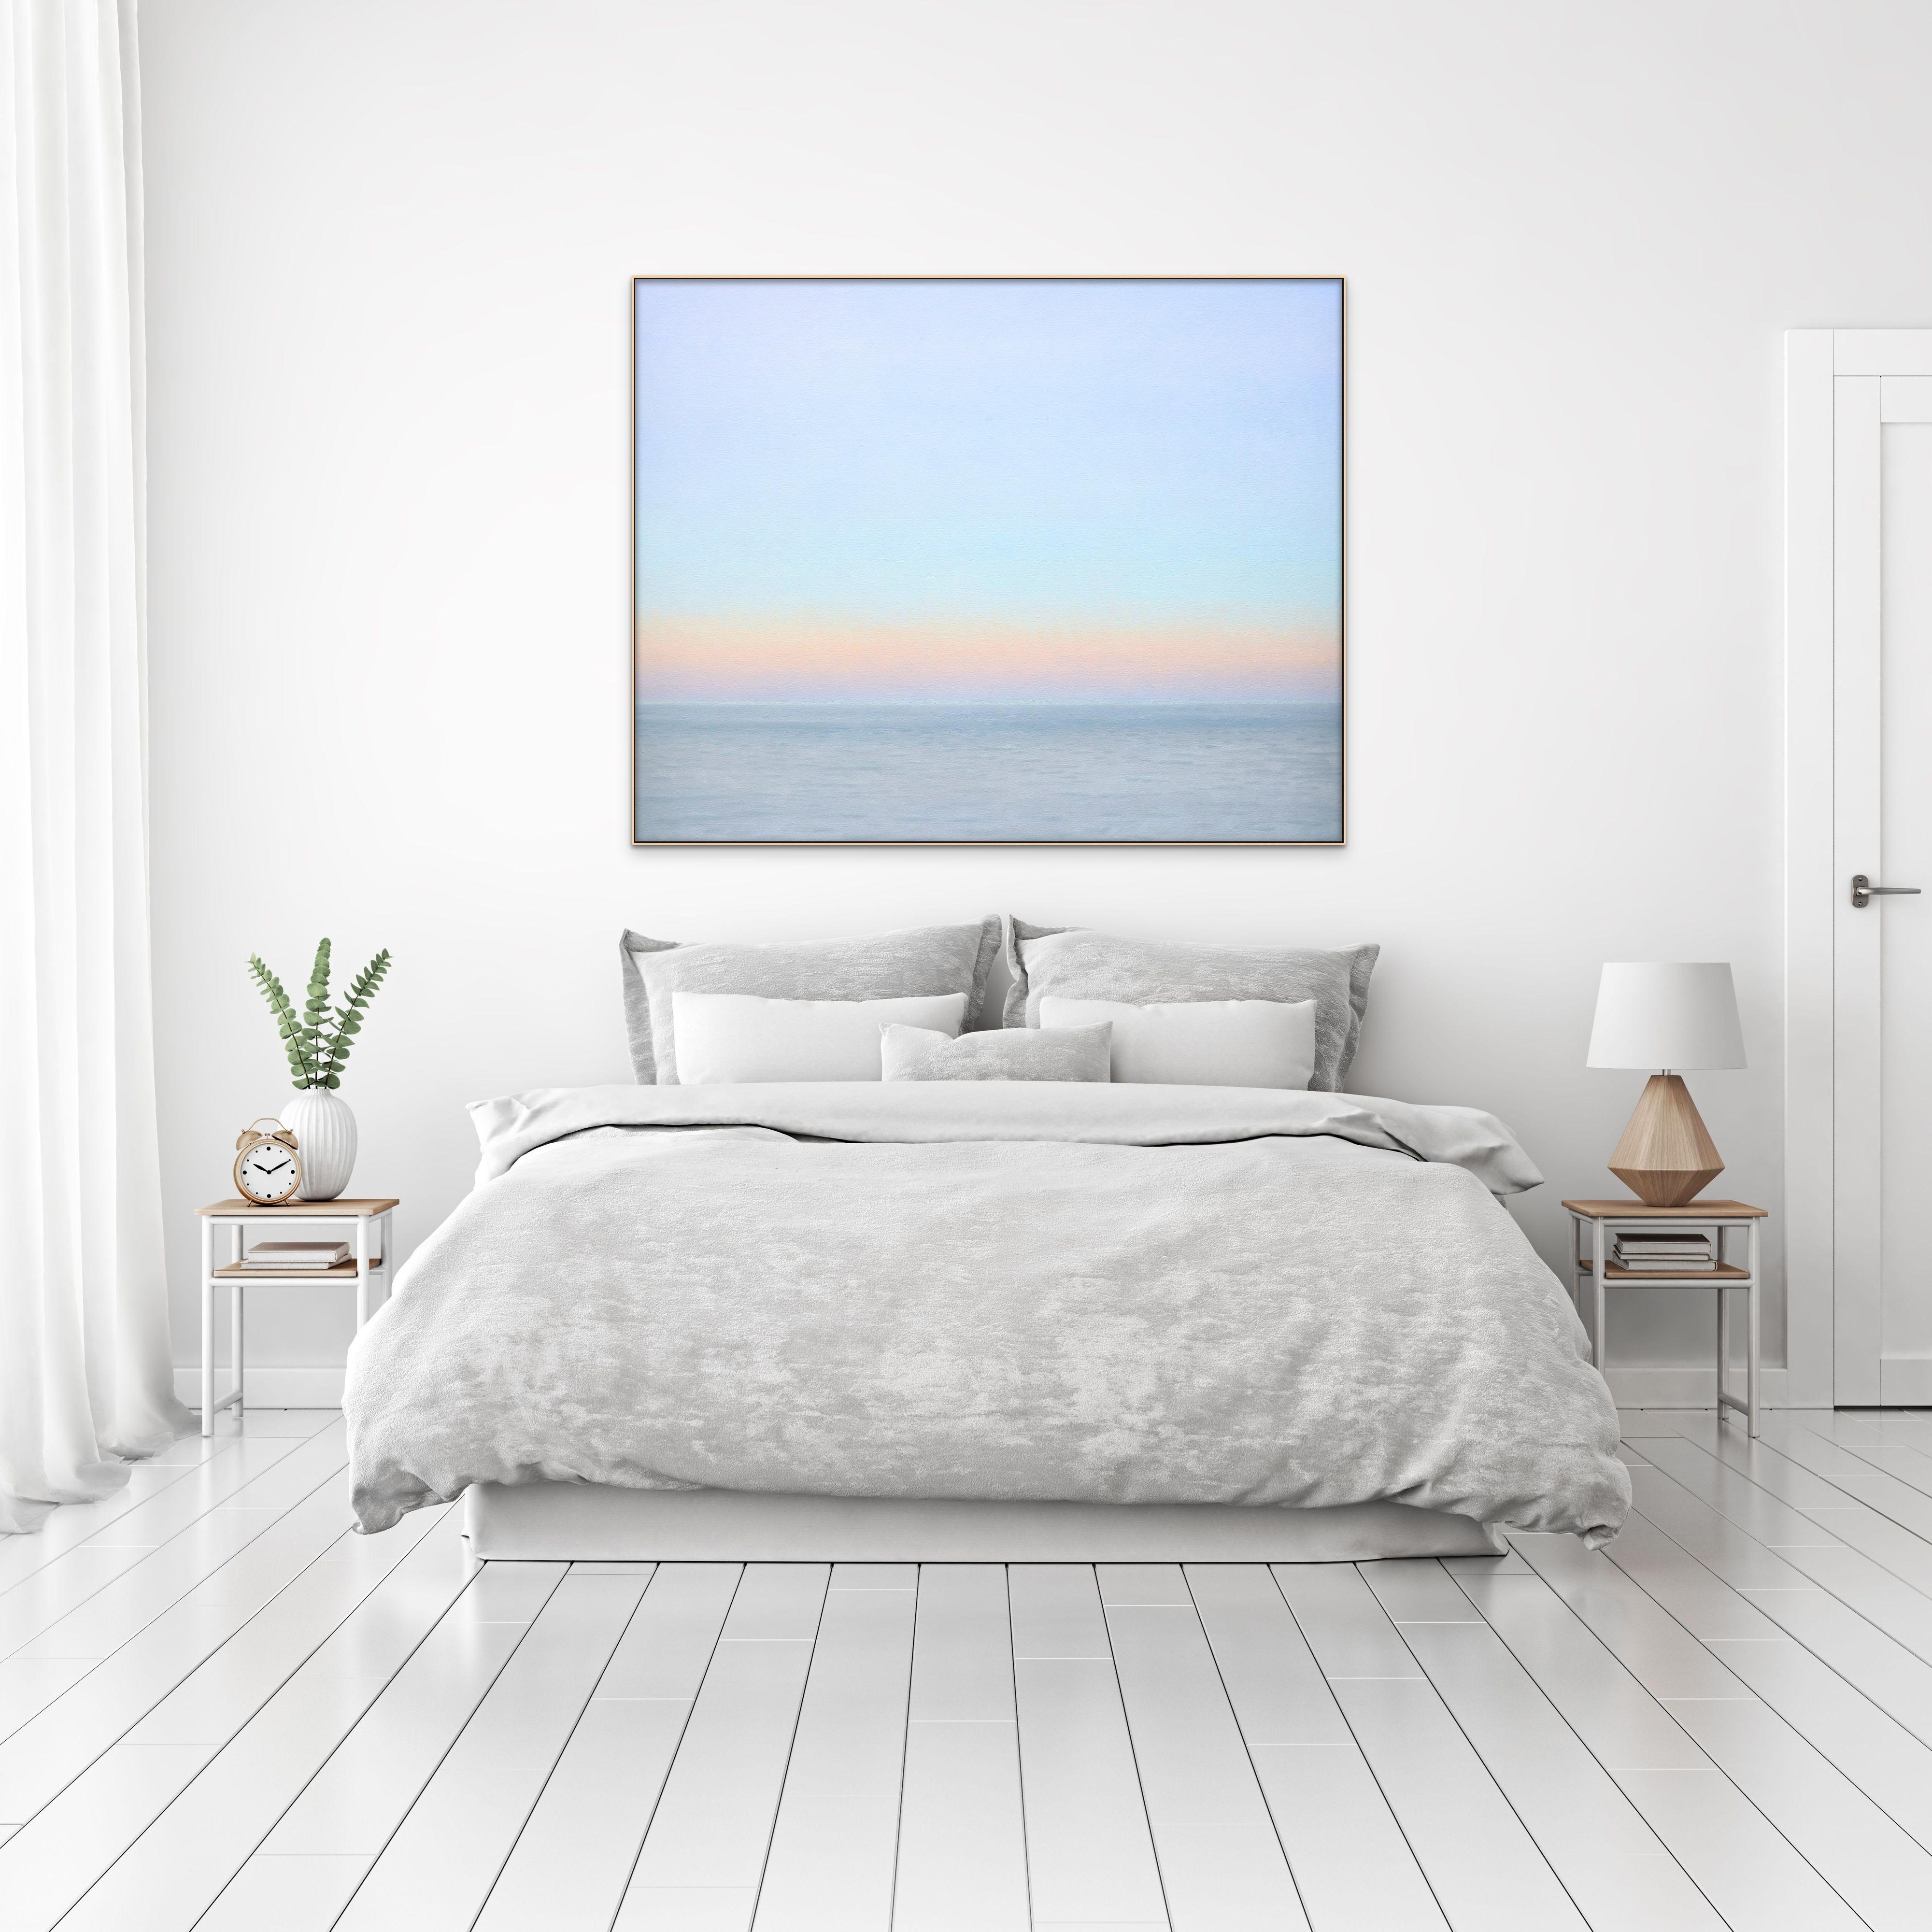 Ciel serein et calme, océan, horizon, lever ou coucher de soleil, peinture à l'huile du réaliste américain Willard Dixon, qui fait le lien entre le réalisme et l'abstraction naturelle dans sa série de peintures de ciel époustouflantes et éthérées. 